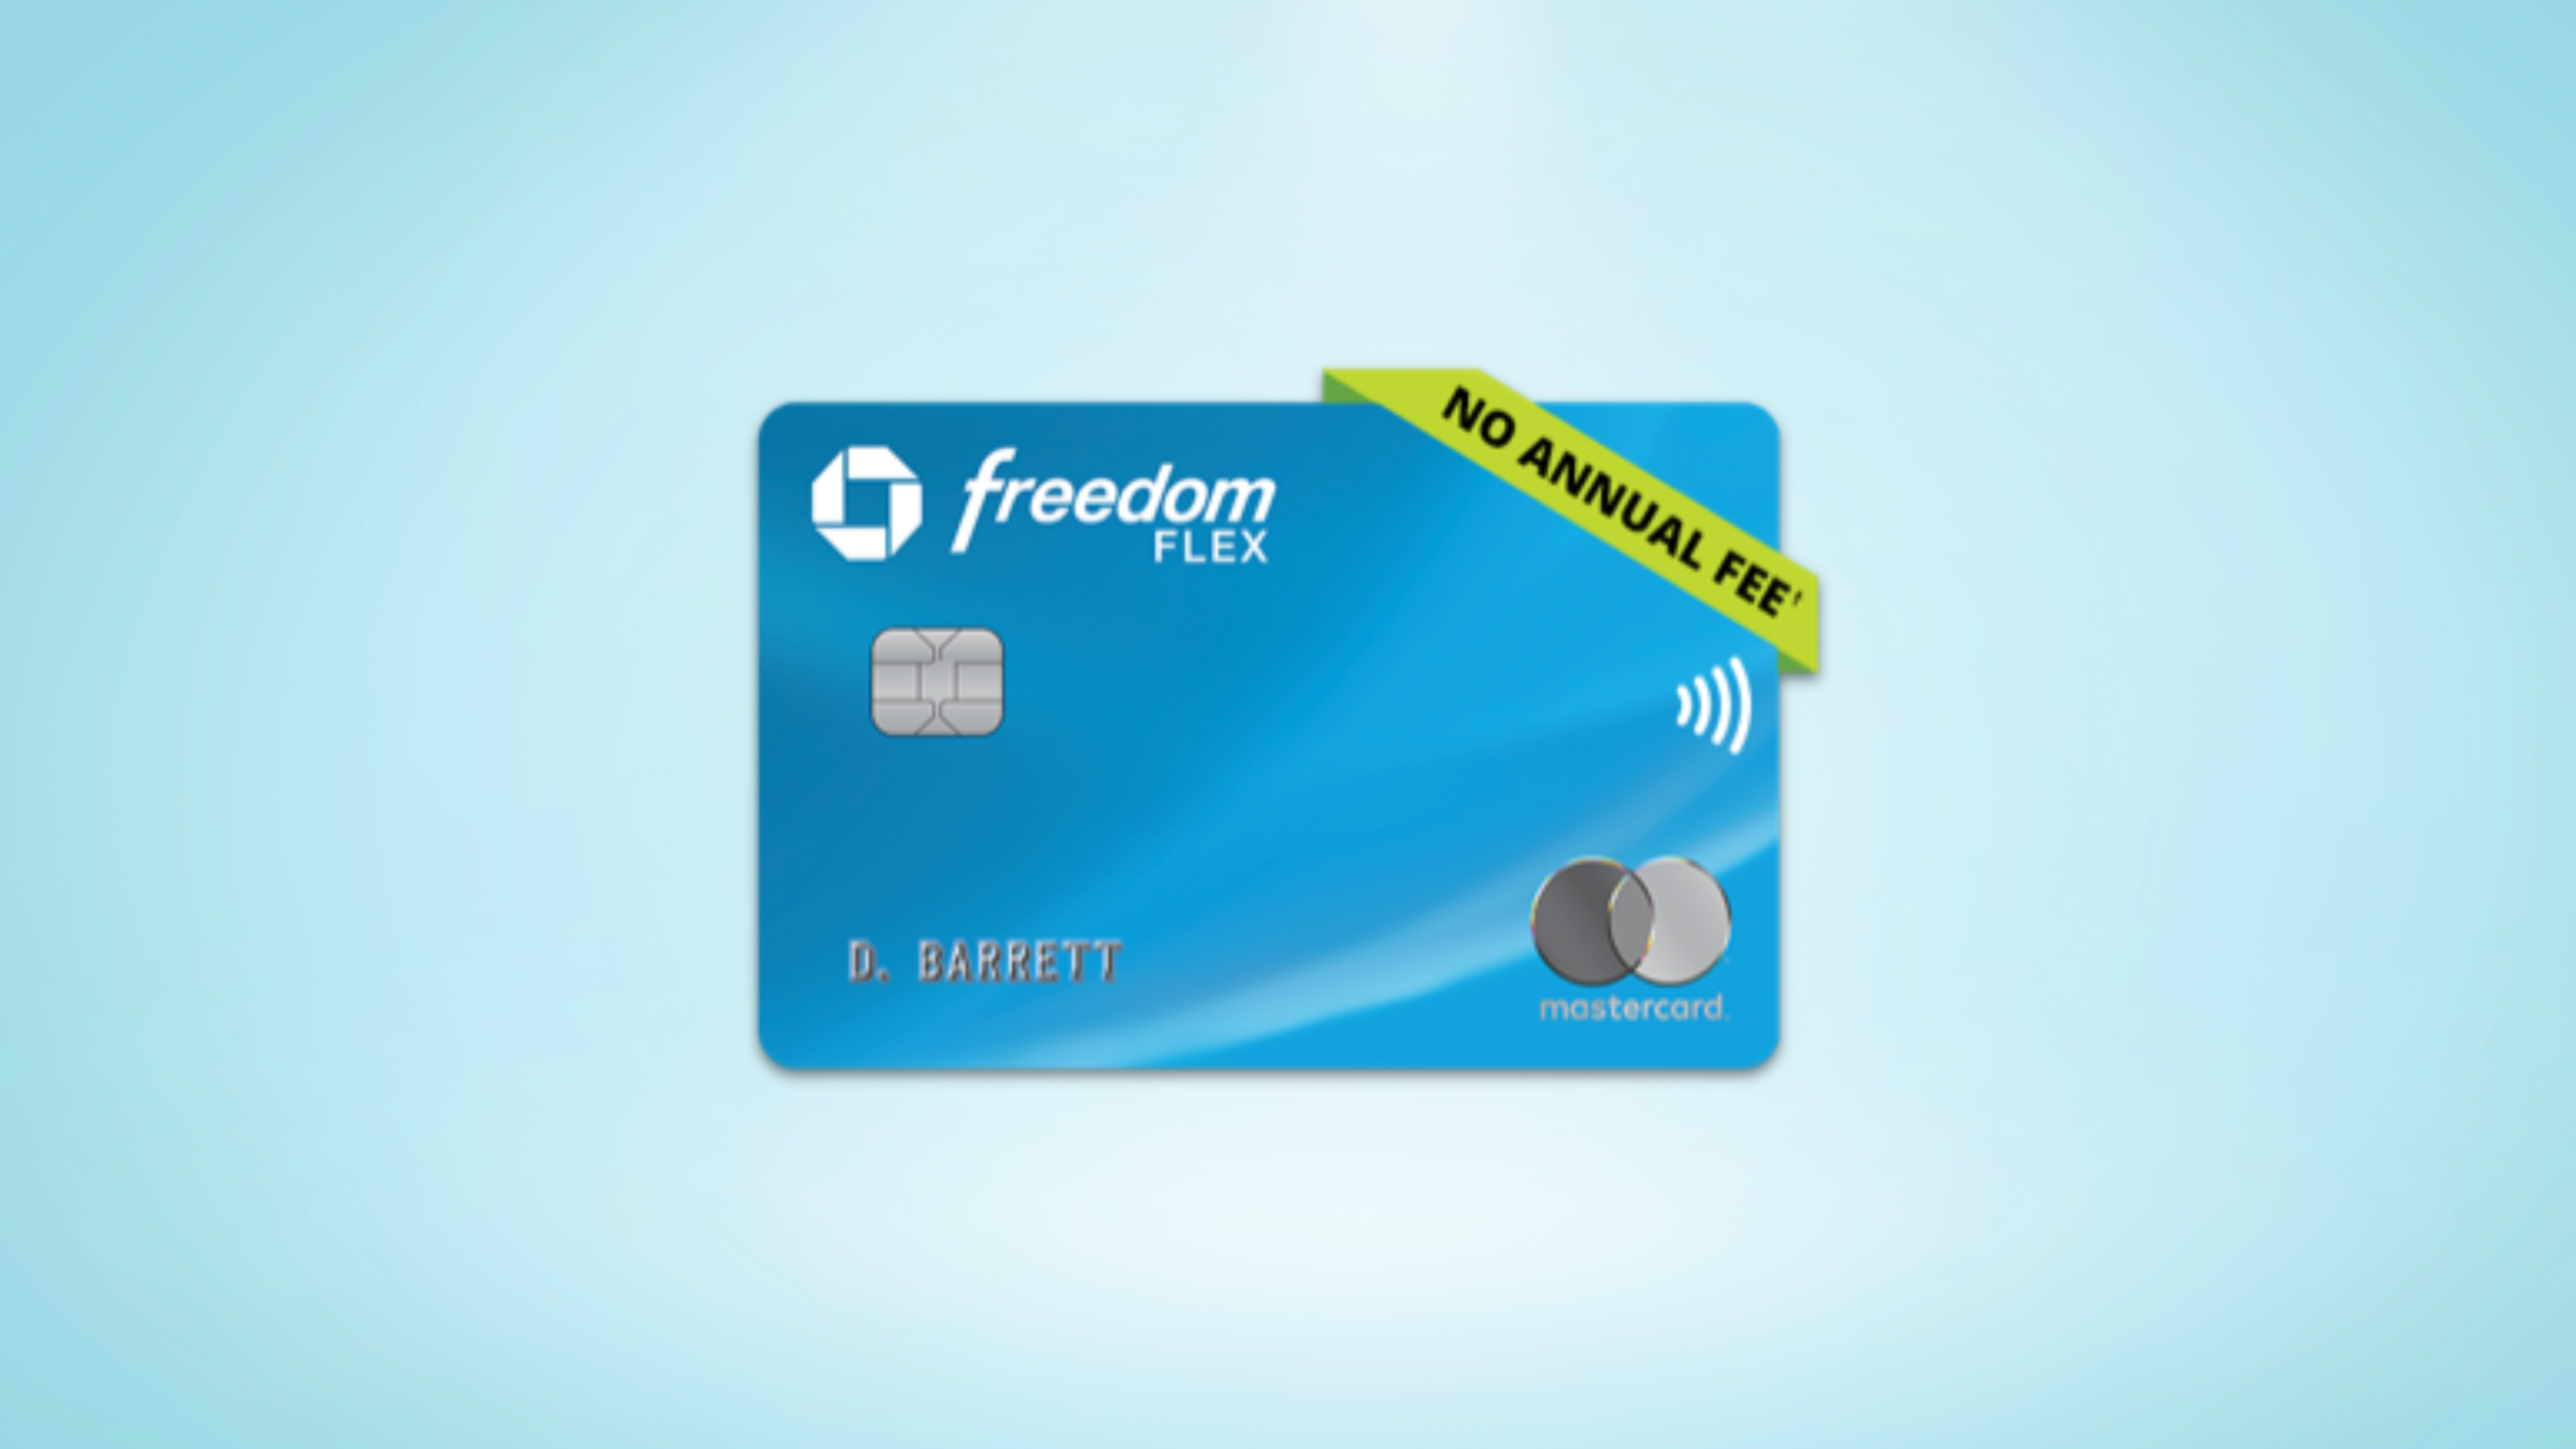 Chase Freedom Flex℠ credit card